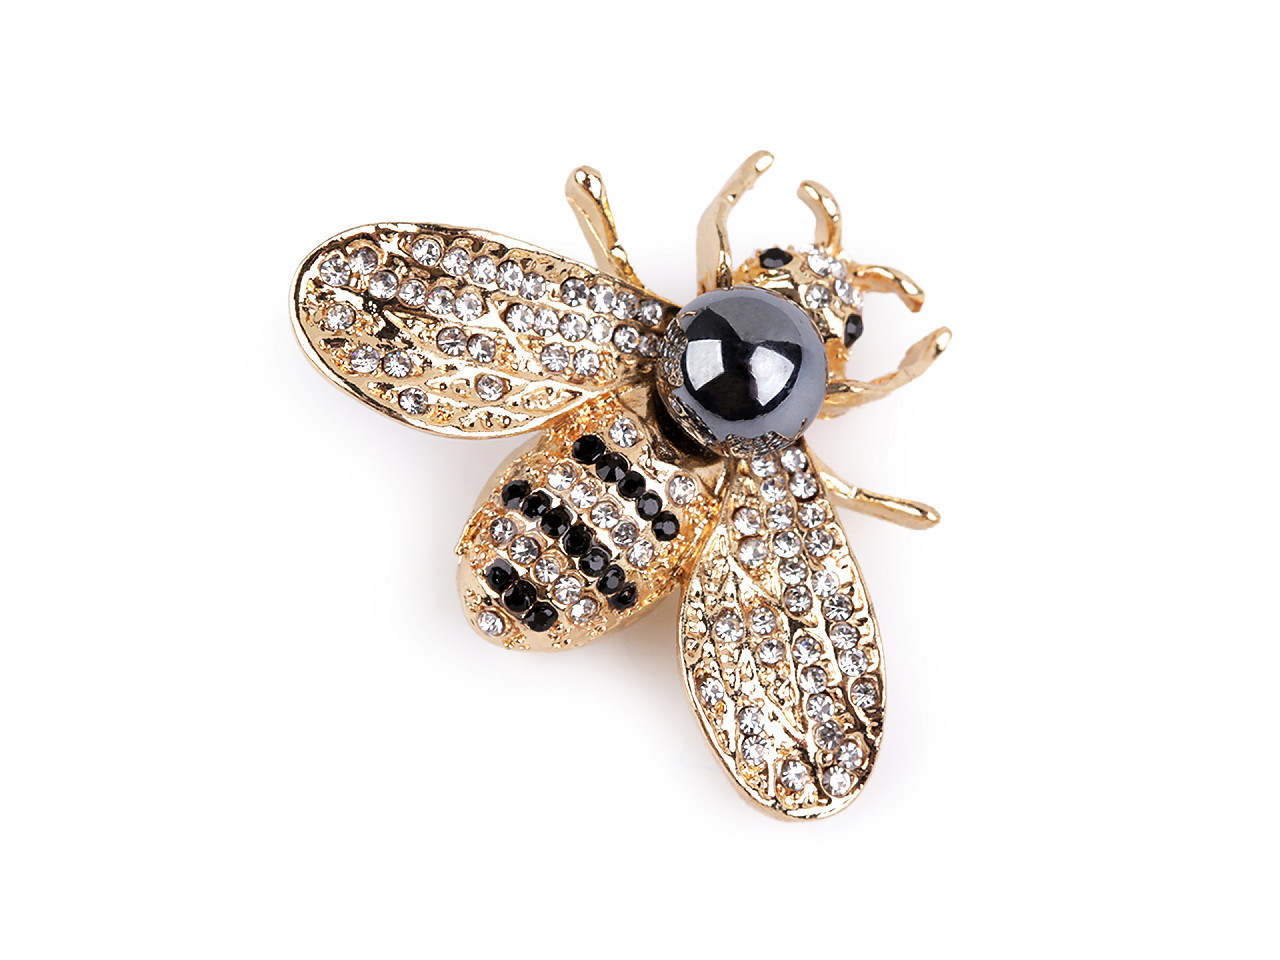 Brož s broušenými kamínky a perlou včela, barva 4 crystal zlatá